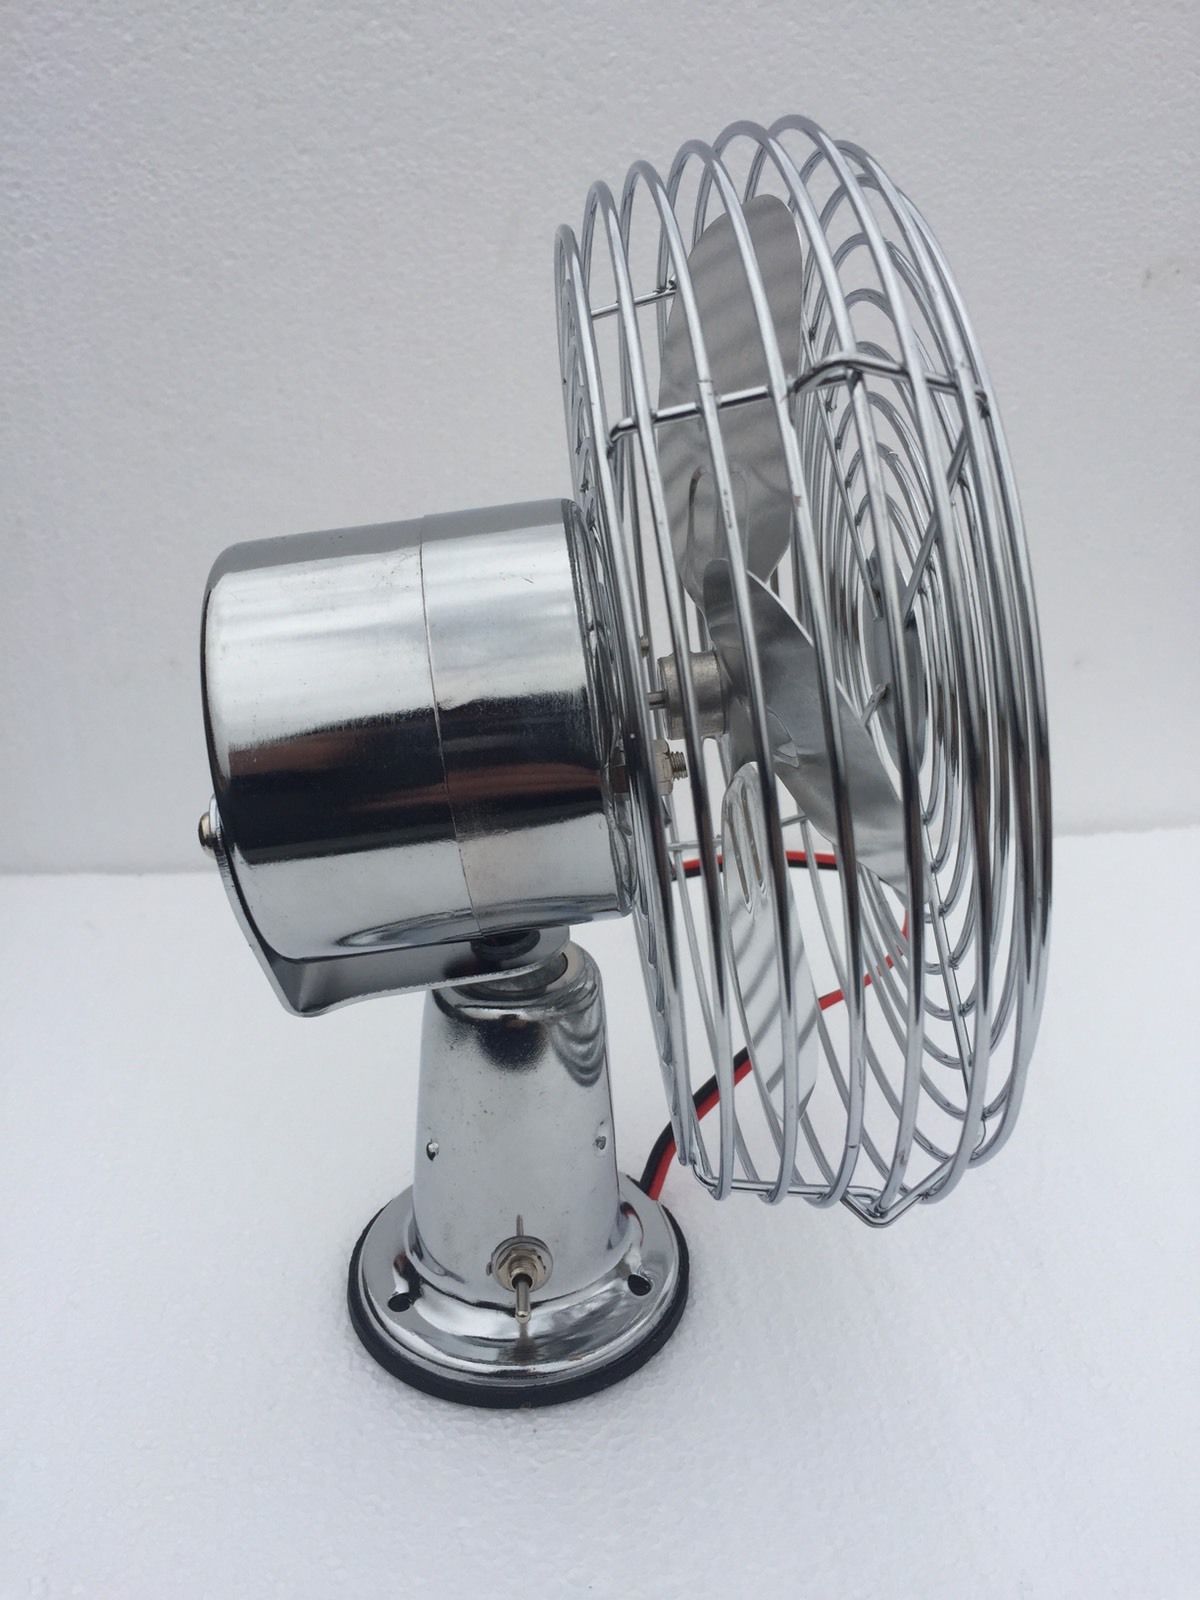 Boat Marine Cabin Cooling Fan / Windshield Defrost Chrome 600 Cfm 12v - 24v